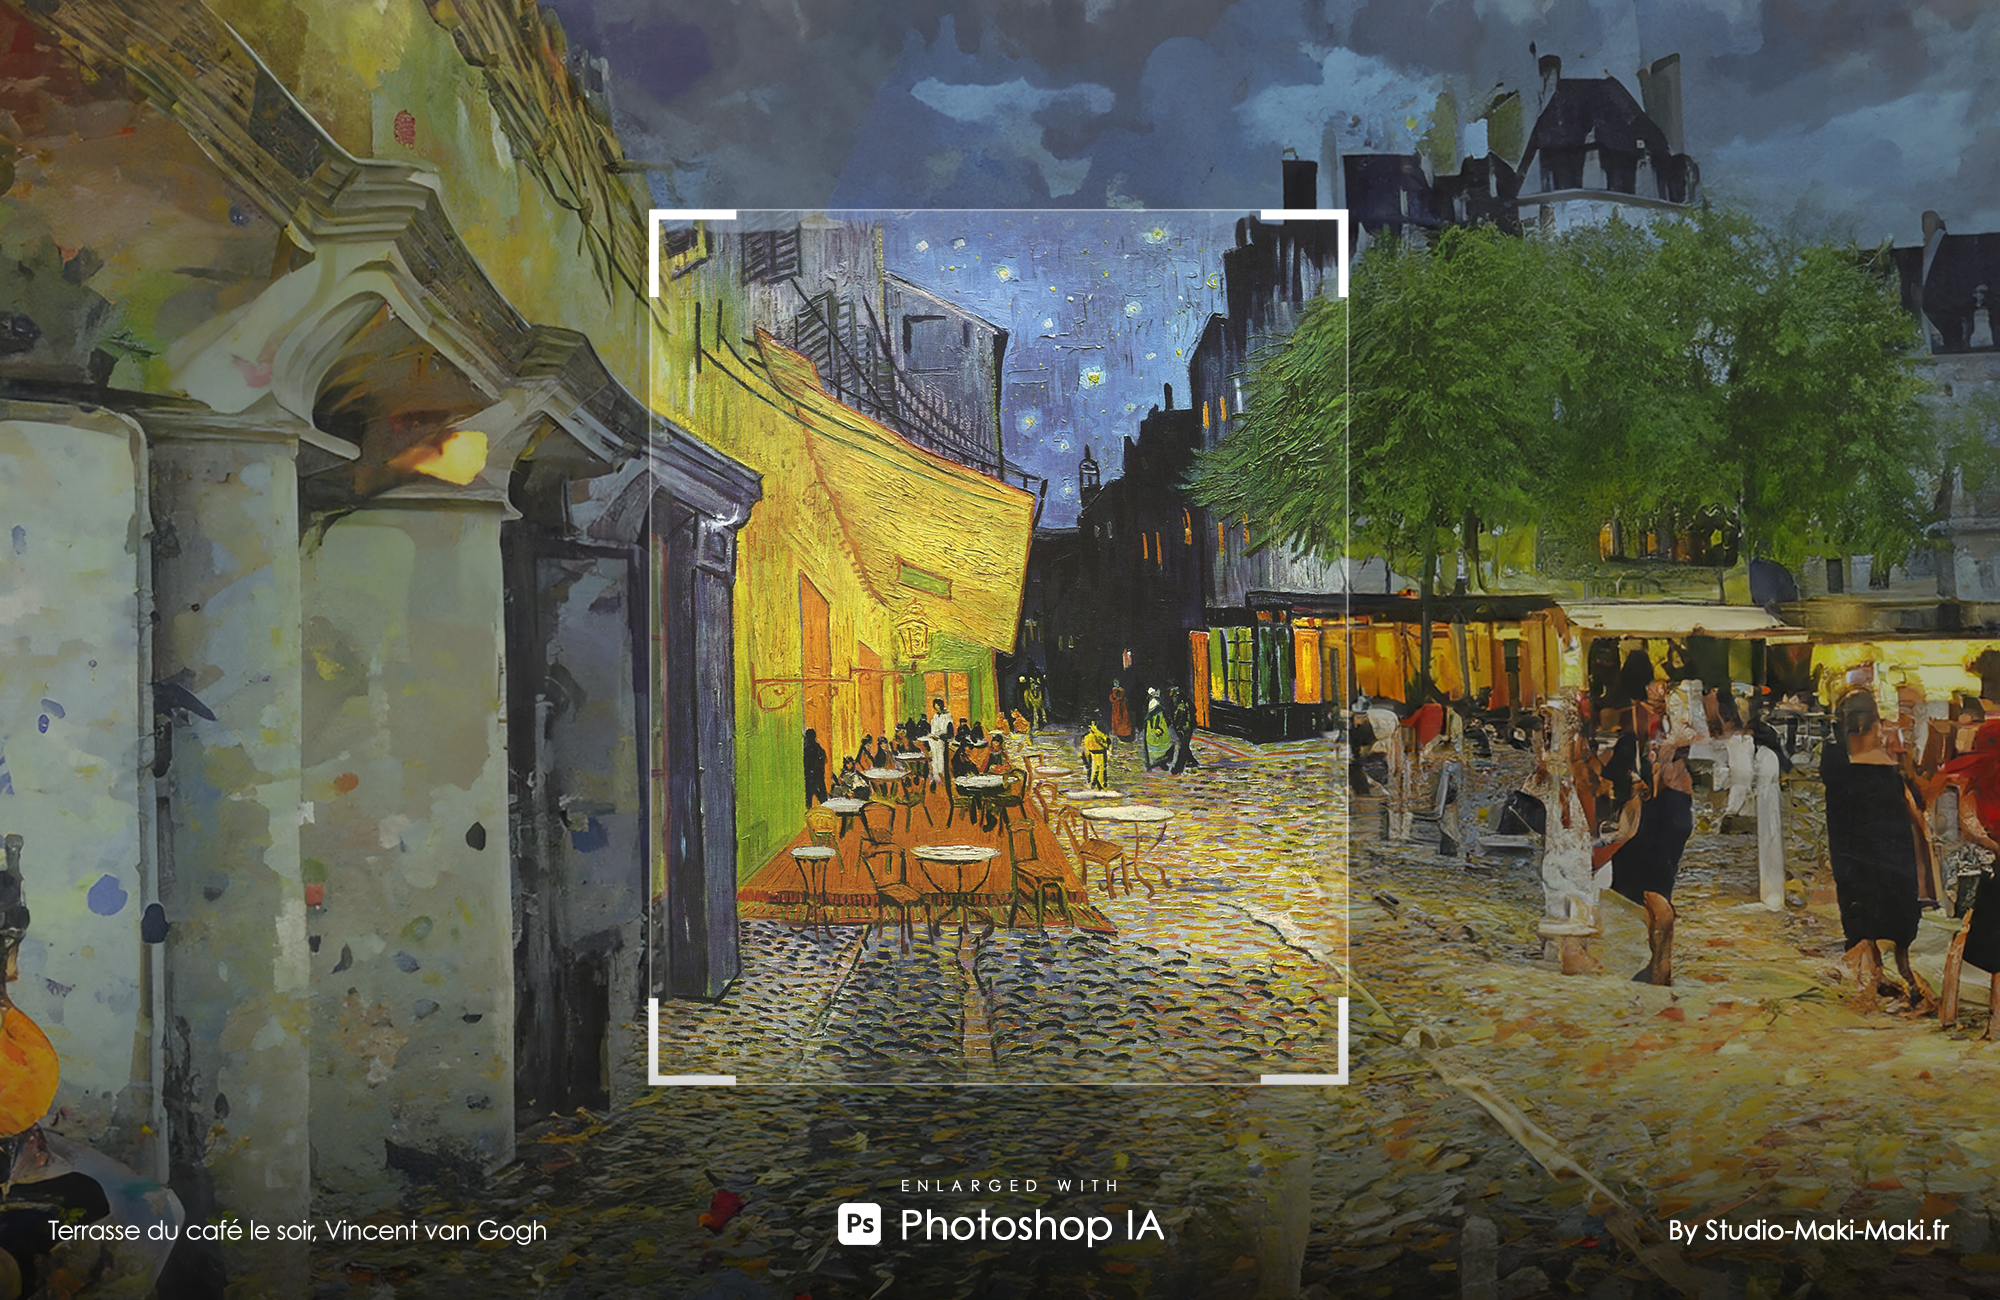 Terrasse du café le soir, Vincent van Gogh - Enlarged with Photoshop IA - By Studio Maki Maki